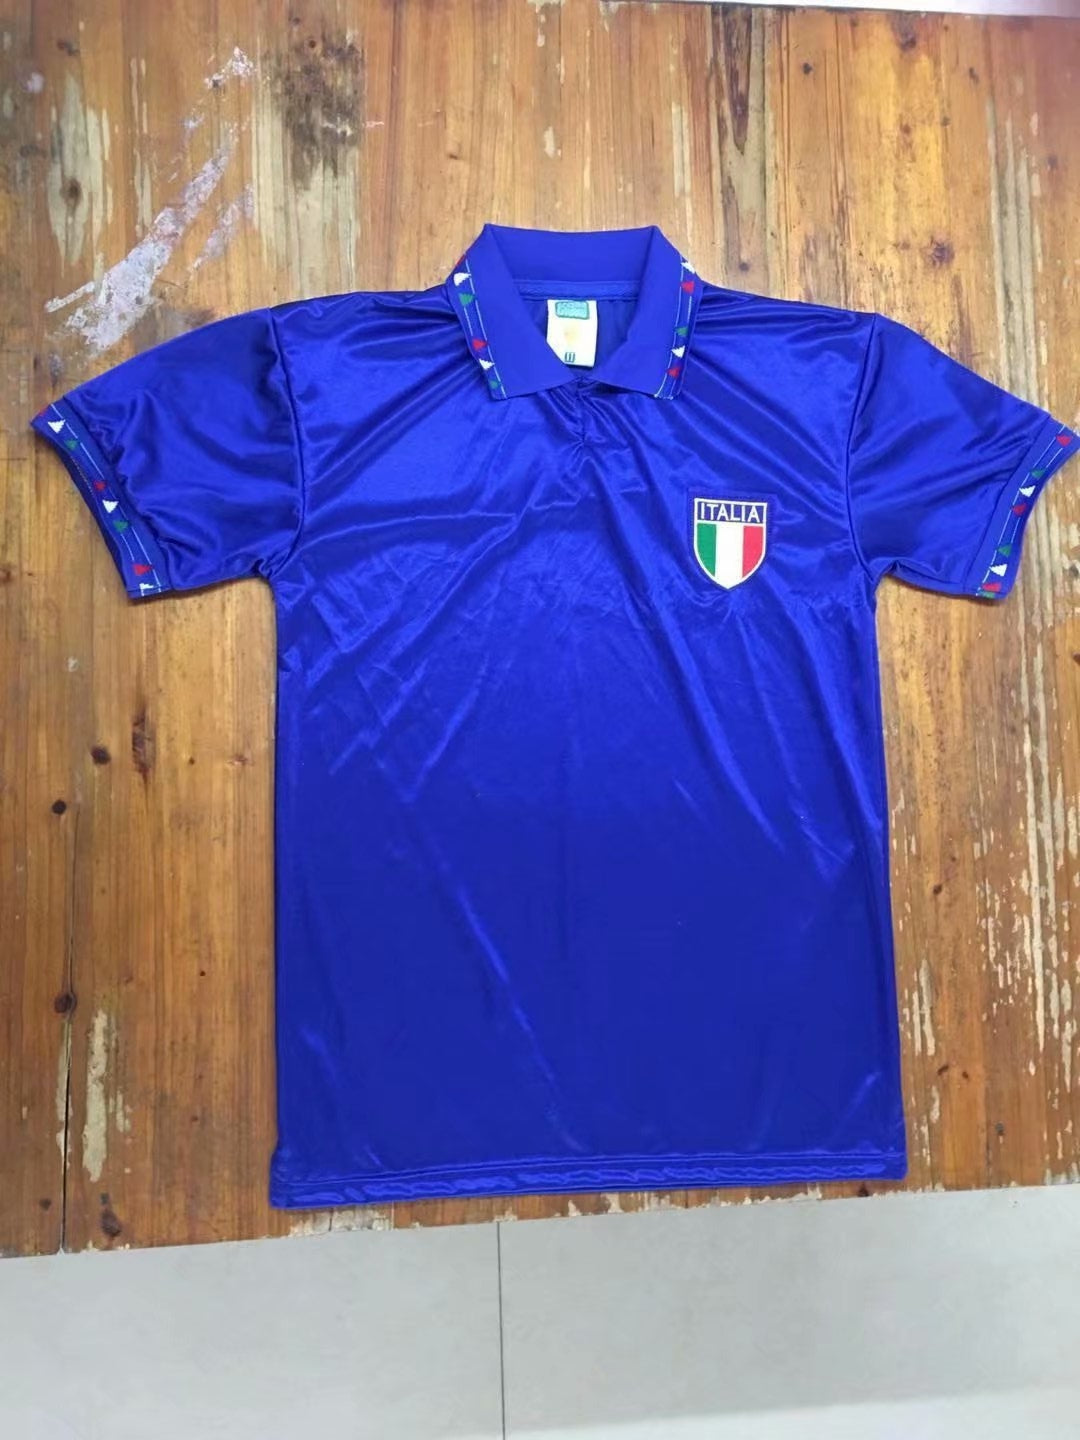 Italy shirt 1990